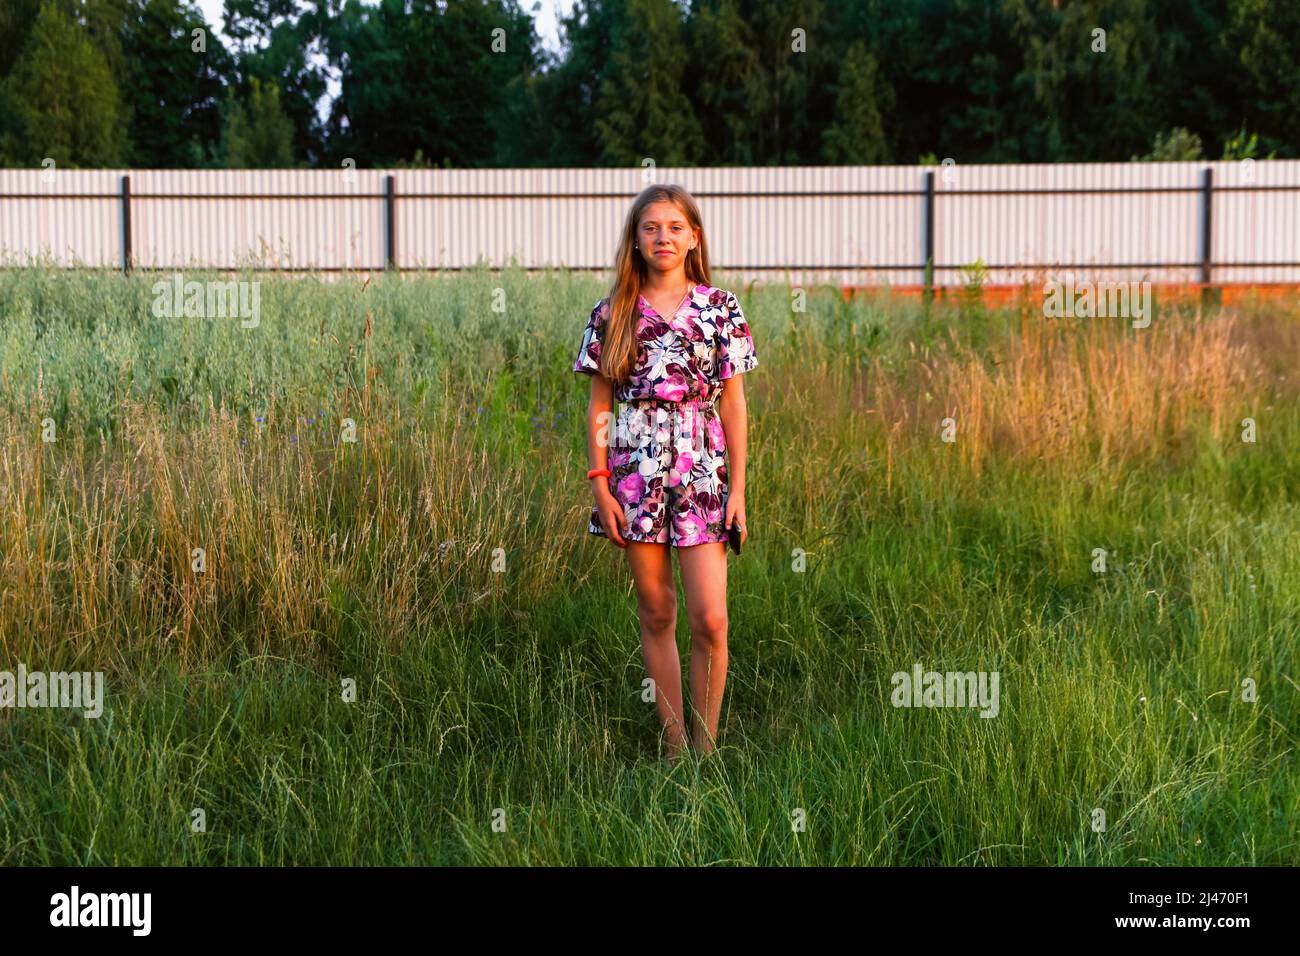 Defocus schöne lächelnde Teenager-Mädchen im Kleid stehen vor grünen Sommer Hintergrund. Hohes Mädchen 12 oder 13 Jahre alt auf Sommerrasen. Nicht fokussiert. Stockfoto